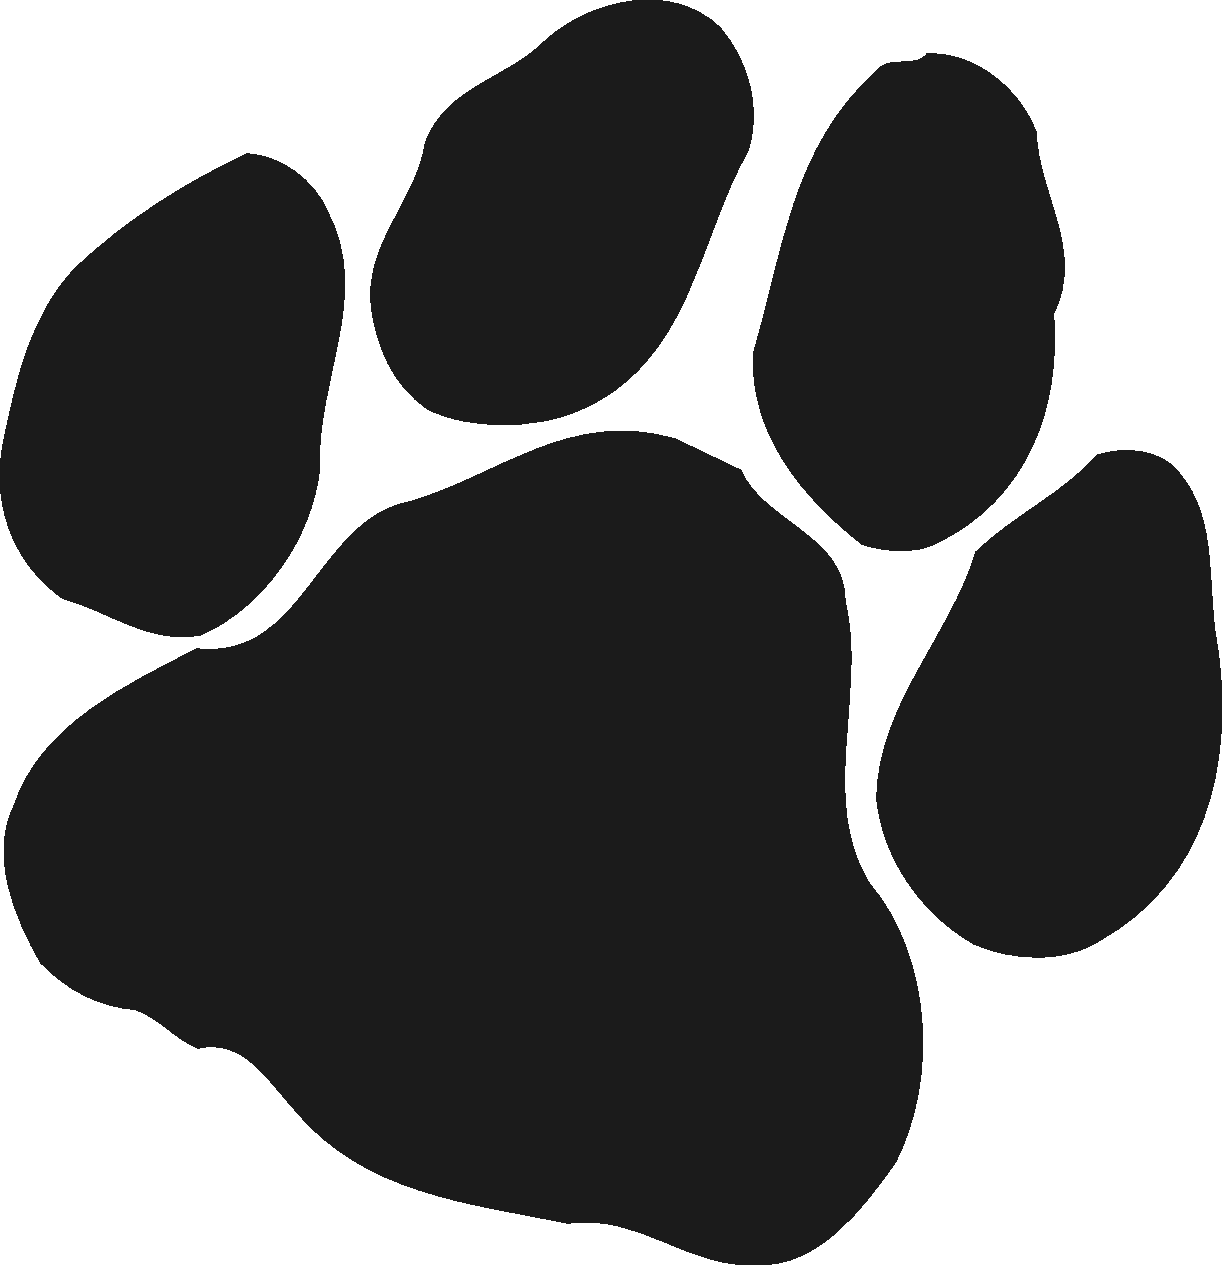 Panther Paw Logo - Panther Paw Print Logo free image